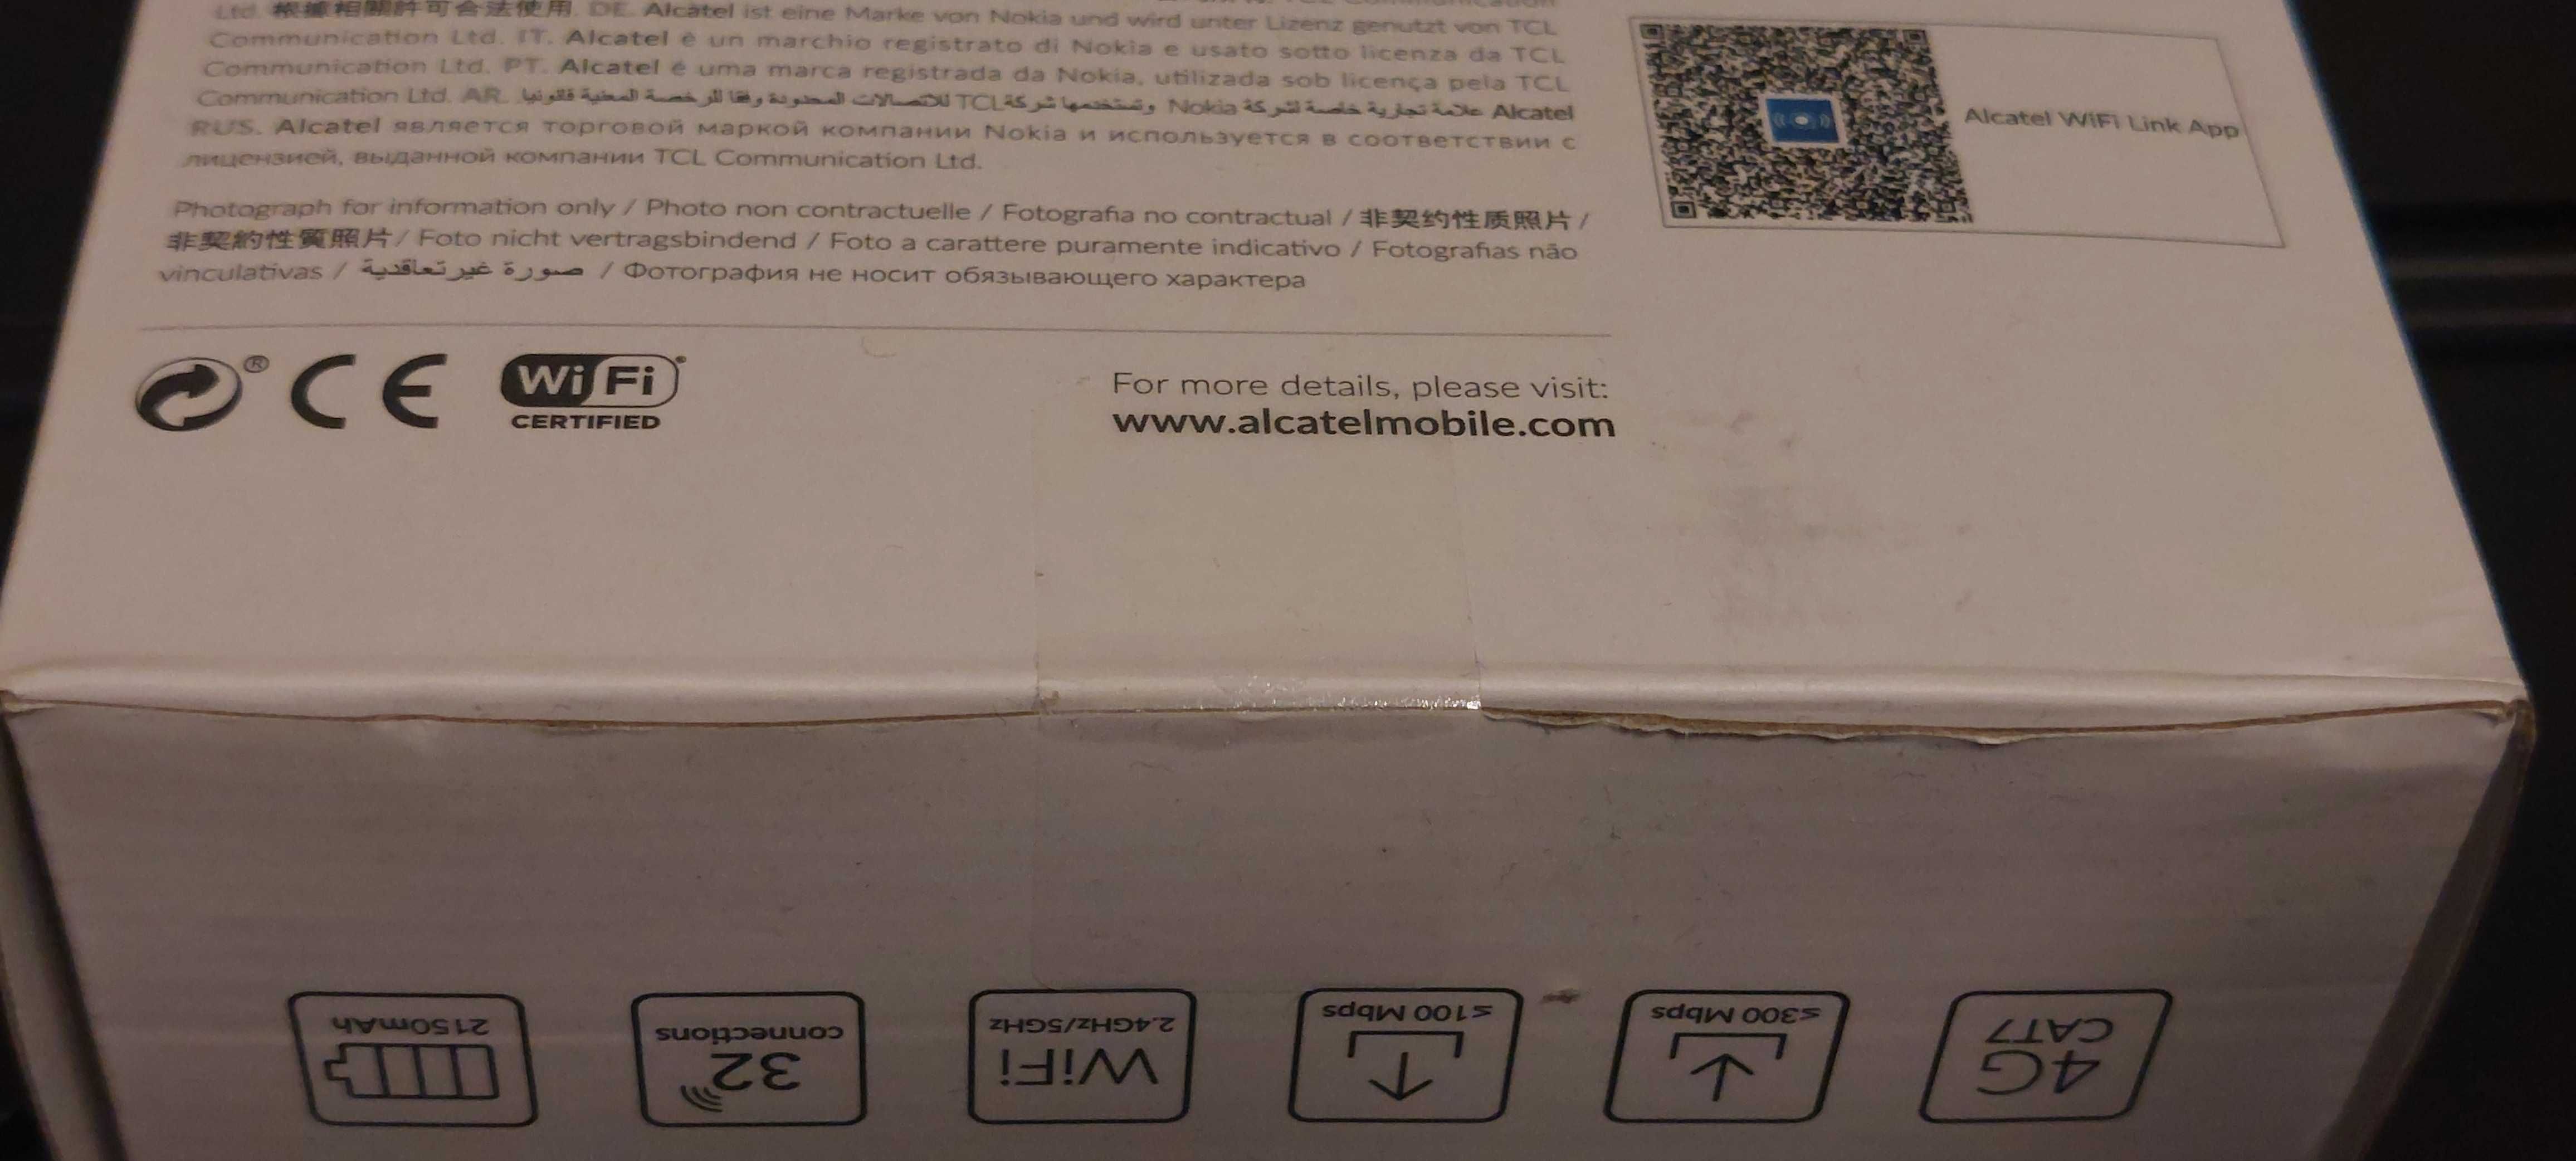 Mobilny router alcatel mw70vk fabrycznie zapakowany